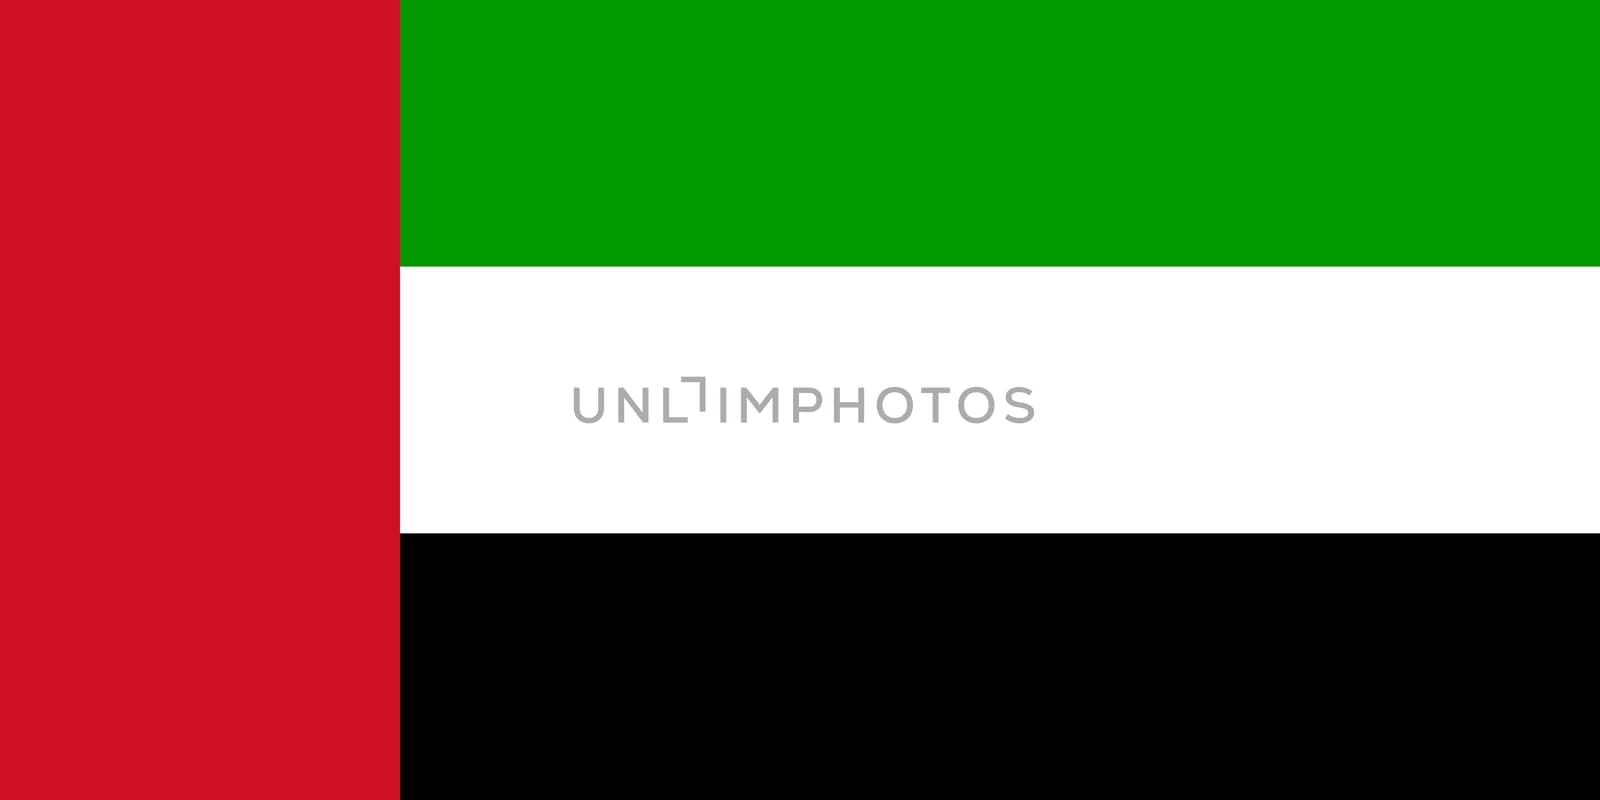 The national flag of United Arab Emirates